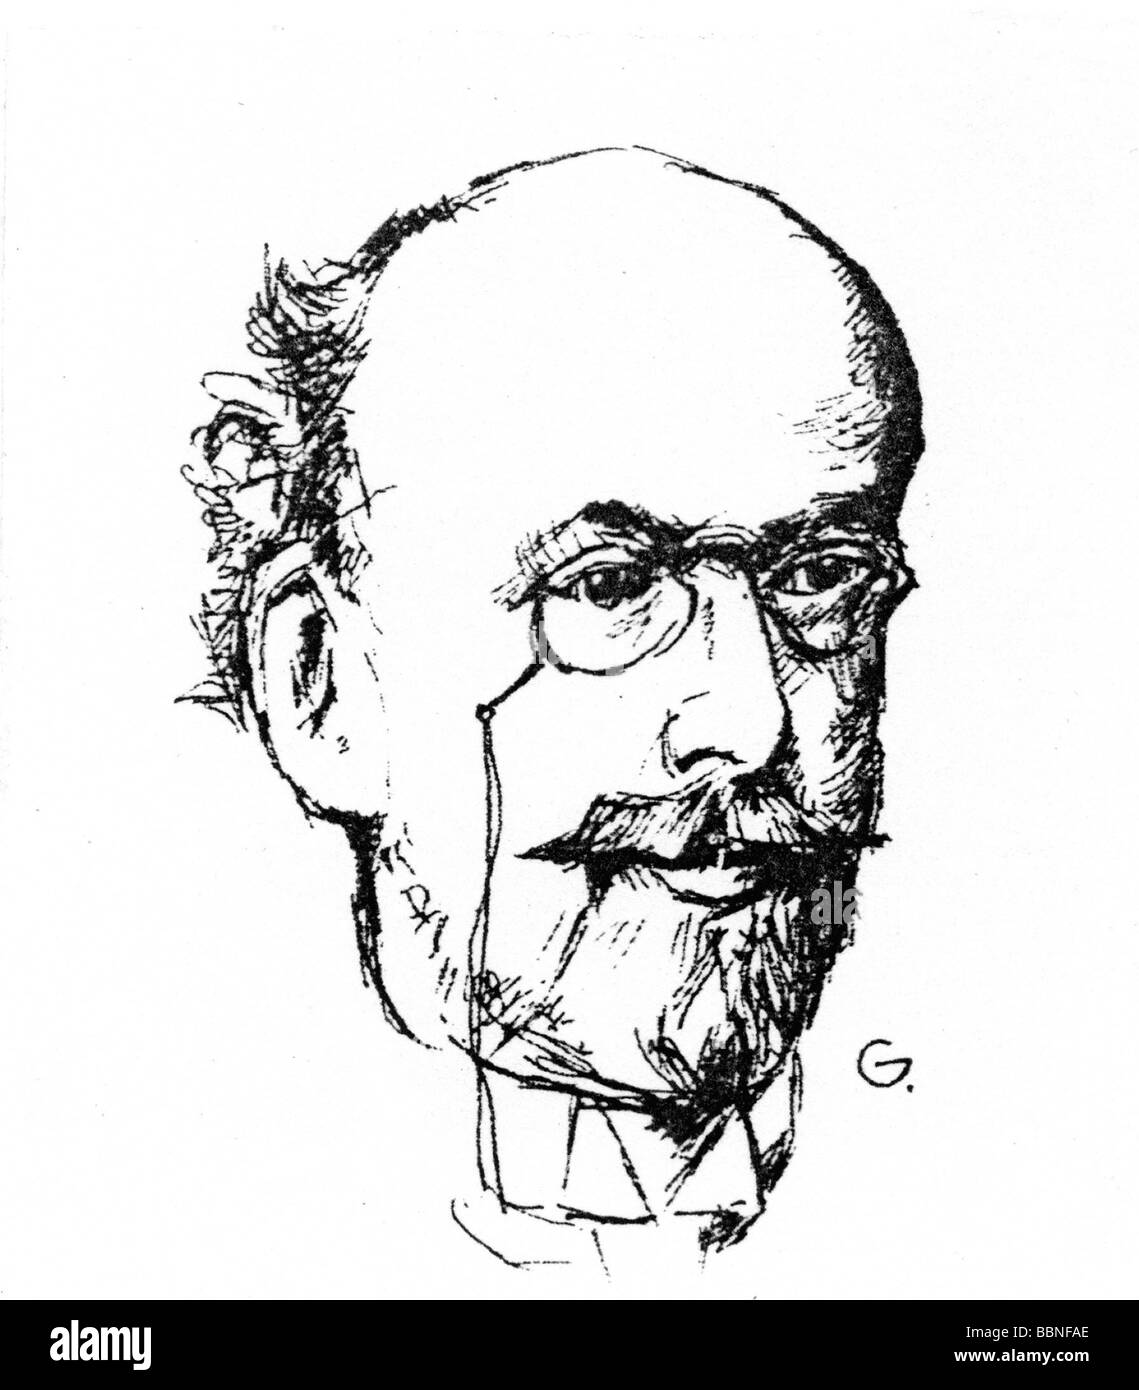 Zeller, Carl, 19.6.1842 - 17.8.1898, österreichischer Komponist von Operetten, Porträt, Zeichnung, Stockfoto